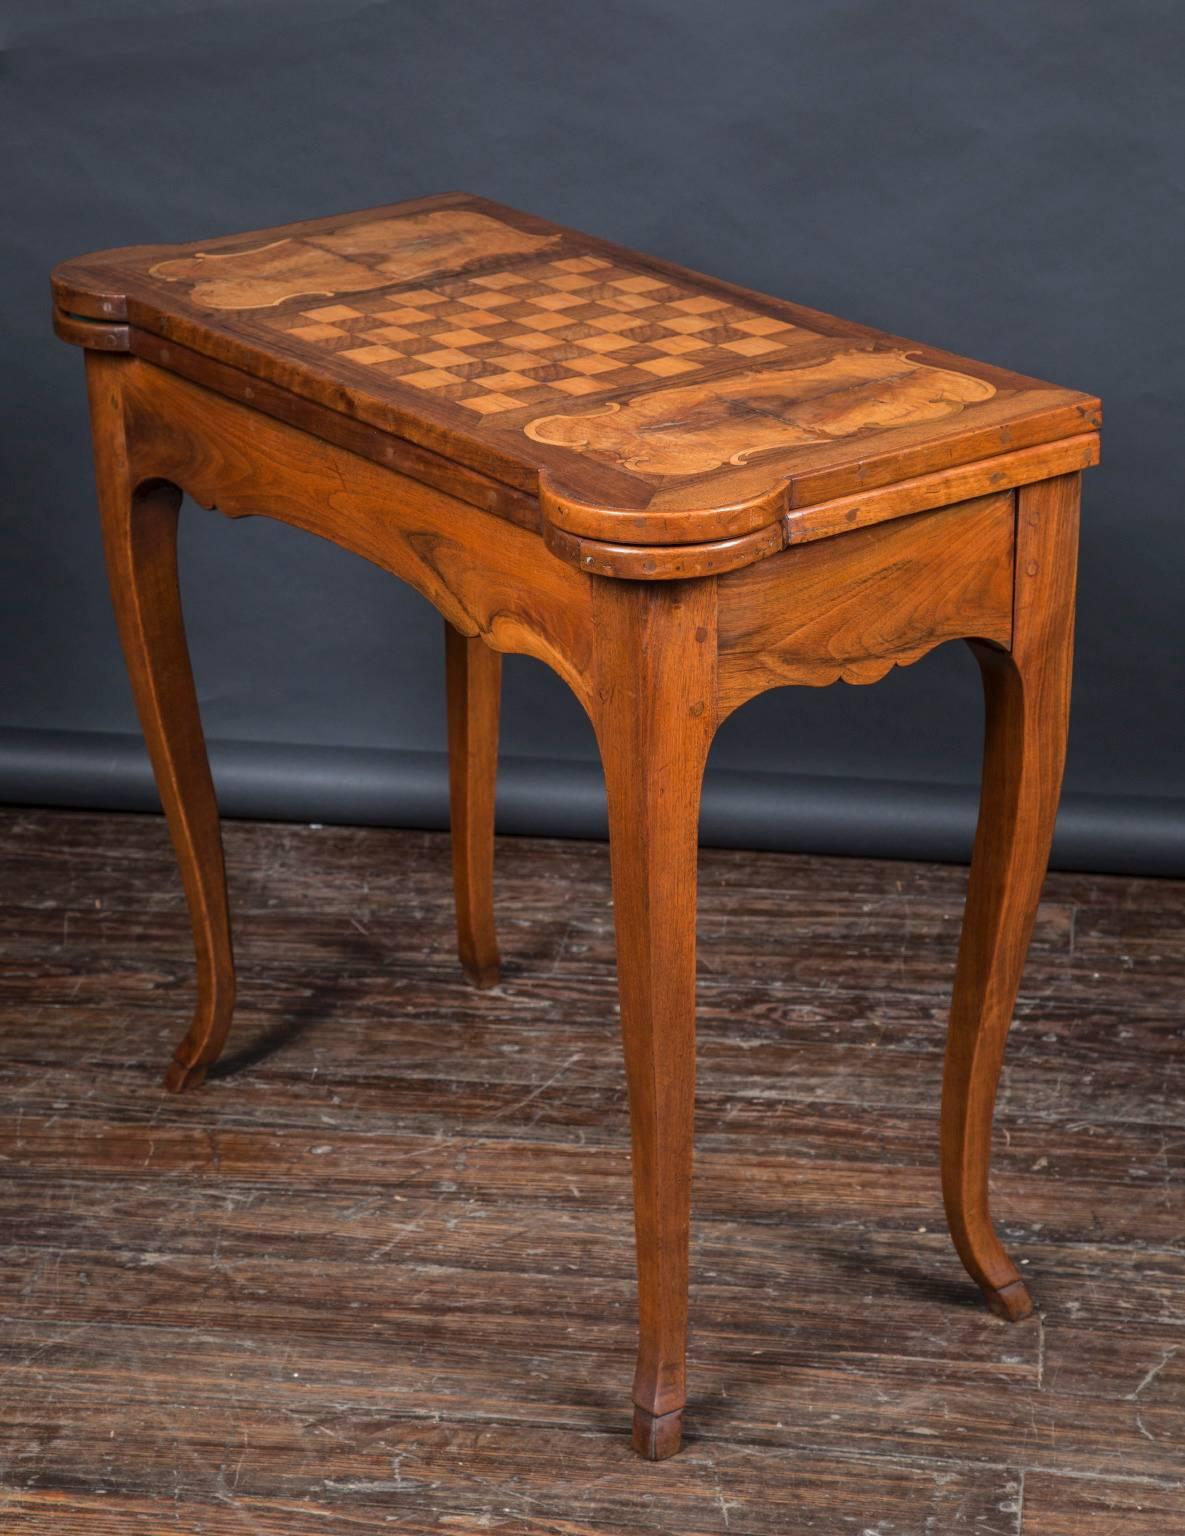 Cette table de jeu du XVIIIe siècle est fabriquée en bois fruitier et son plateau est orné d'un damier incrusté. La table dispose d'un espace de rangement pour les pièces de jeu sous le plateau, et le plateau se replie pour révéler une surface de